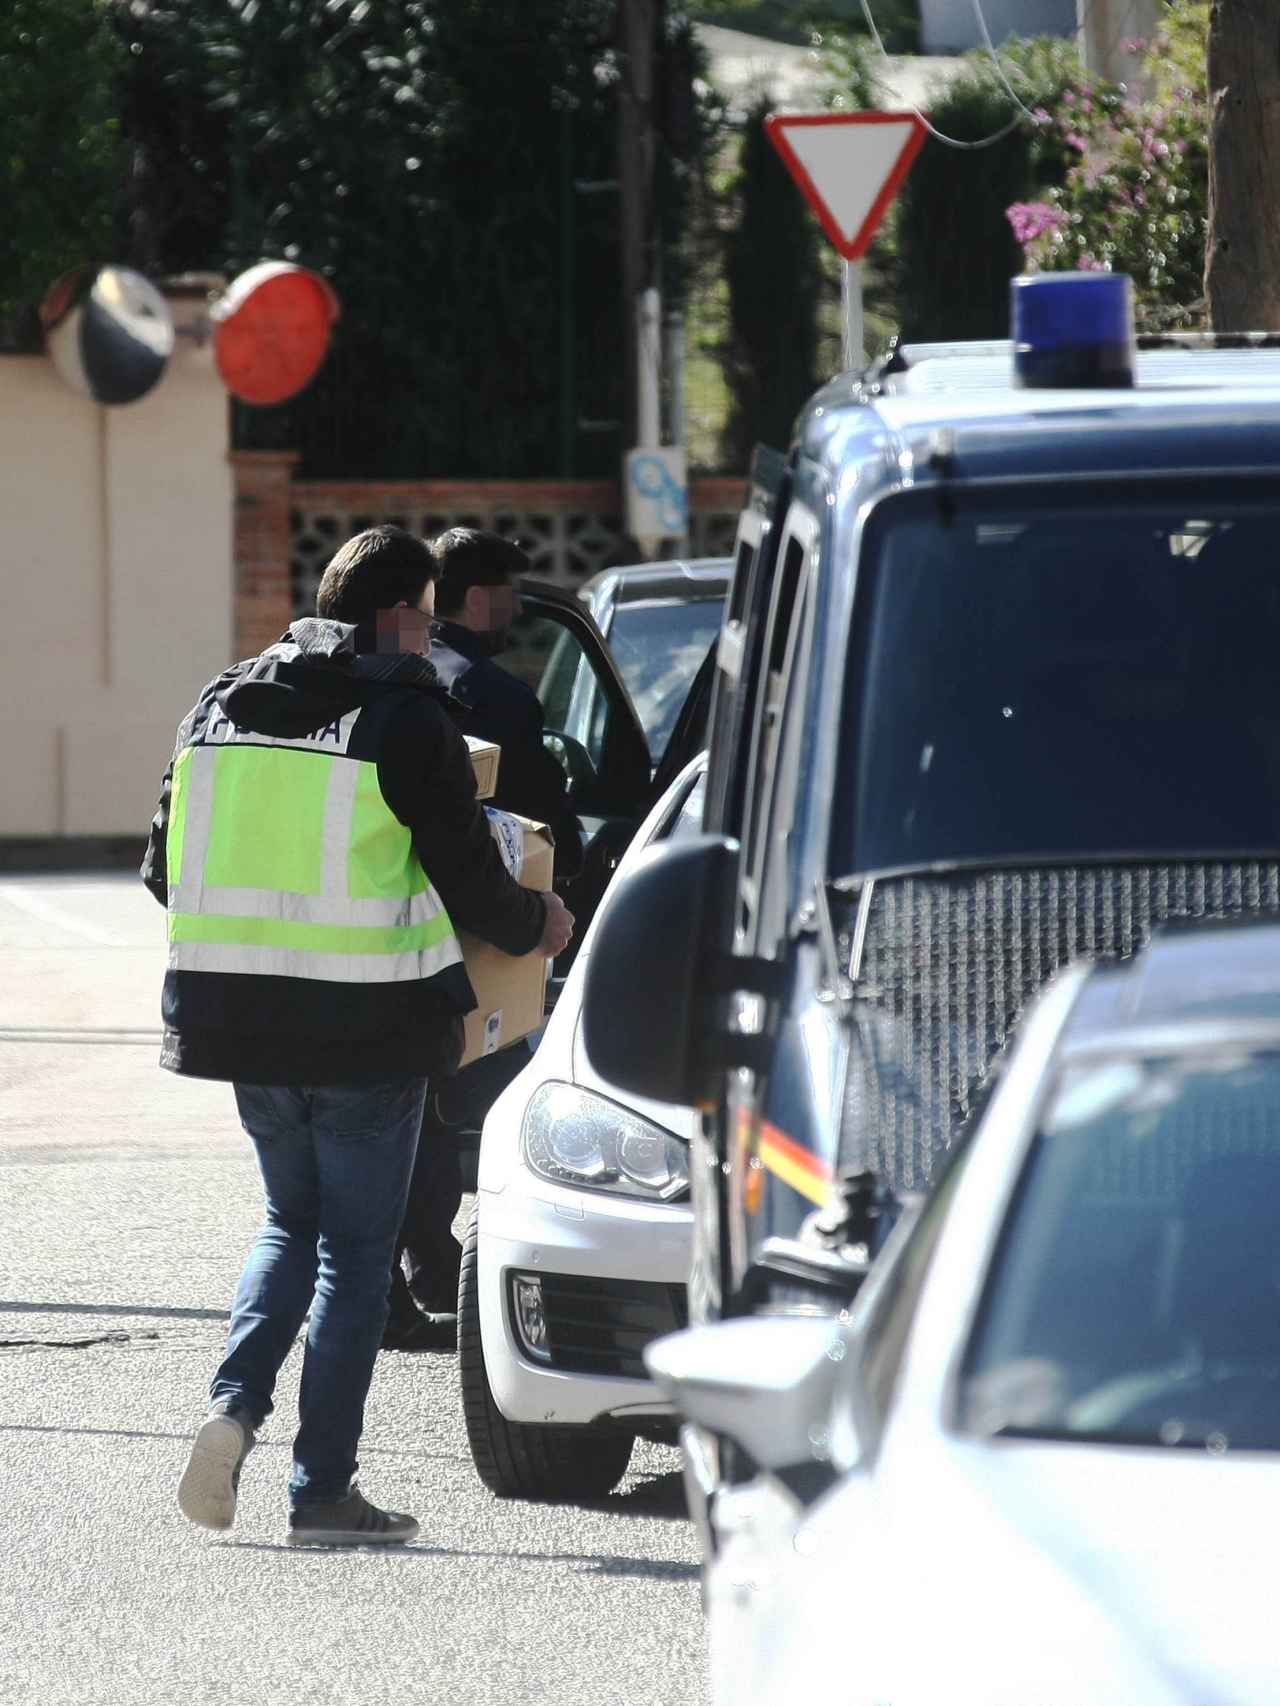 Agentes sacan cajas de la vivienda registrada en la urbanización Colonia San Miguel de la localidad gaditana de Algeciras.